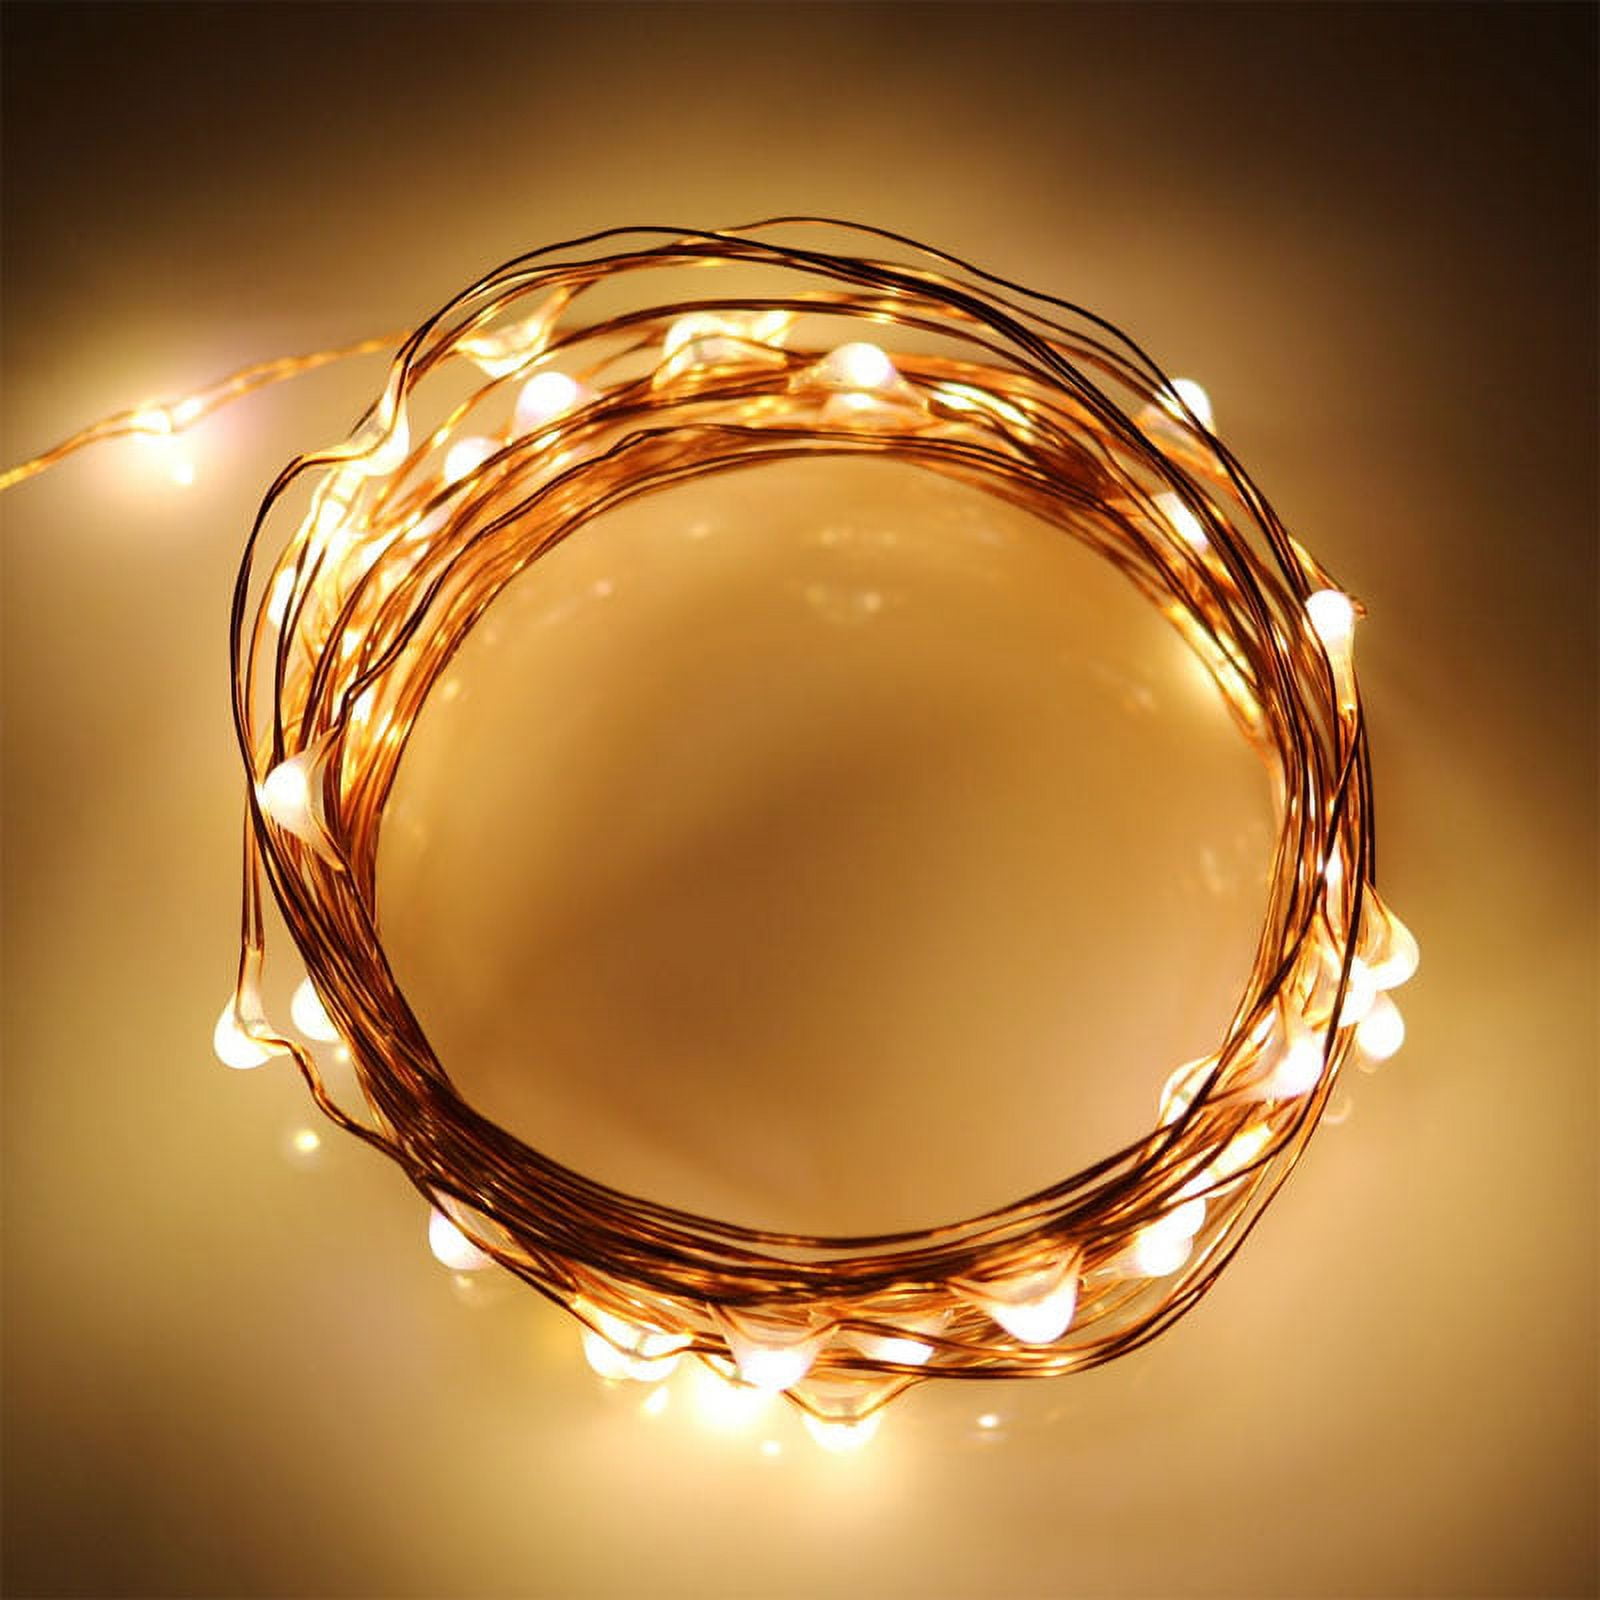 Fairy LED String Lights - Ball / Warm White / Battery-2M 20LEDs